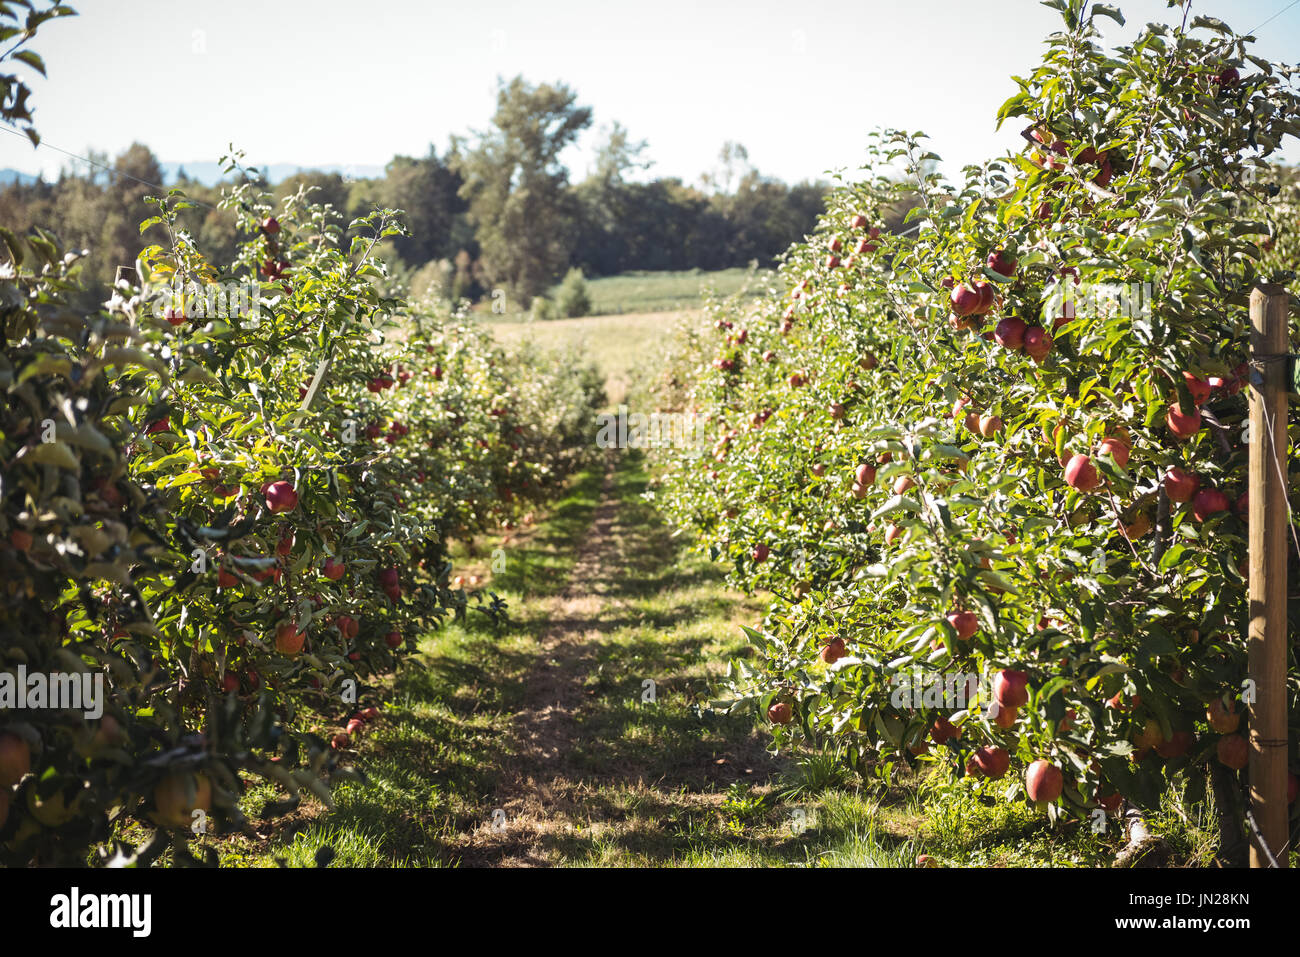 Vista del huerto de manzanas en un día soleado Foto de stock